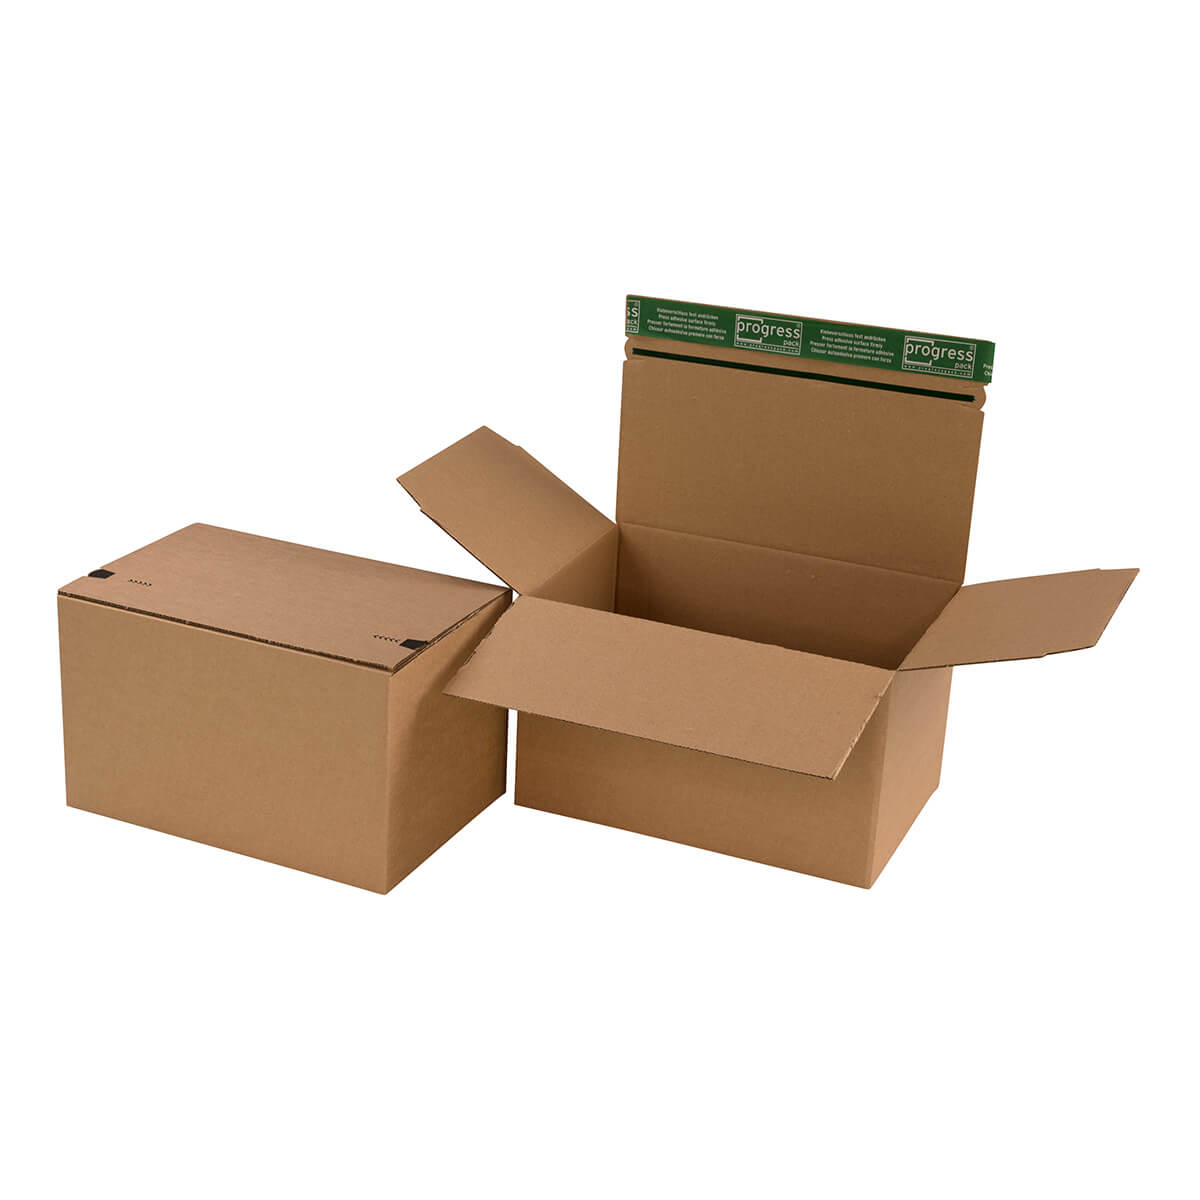 Folding carton 1-wall 370x265x140 mm din b4 self-adhesive + tear strip - progressPACK